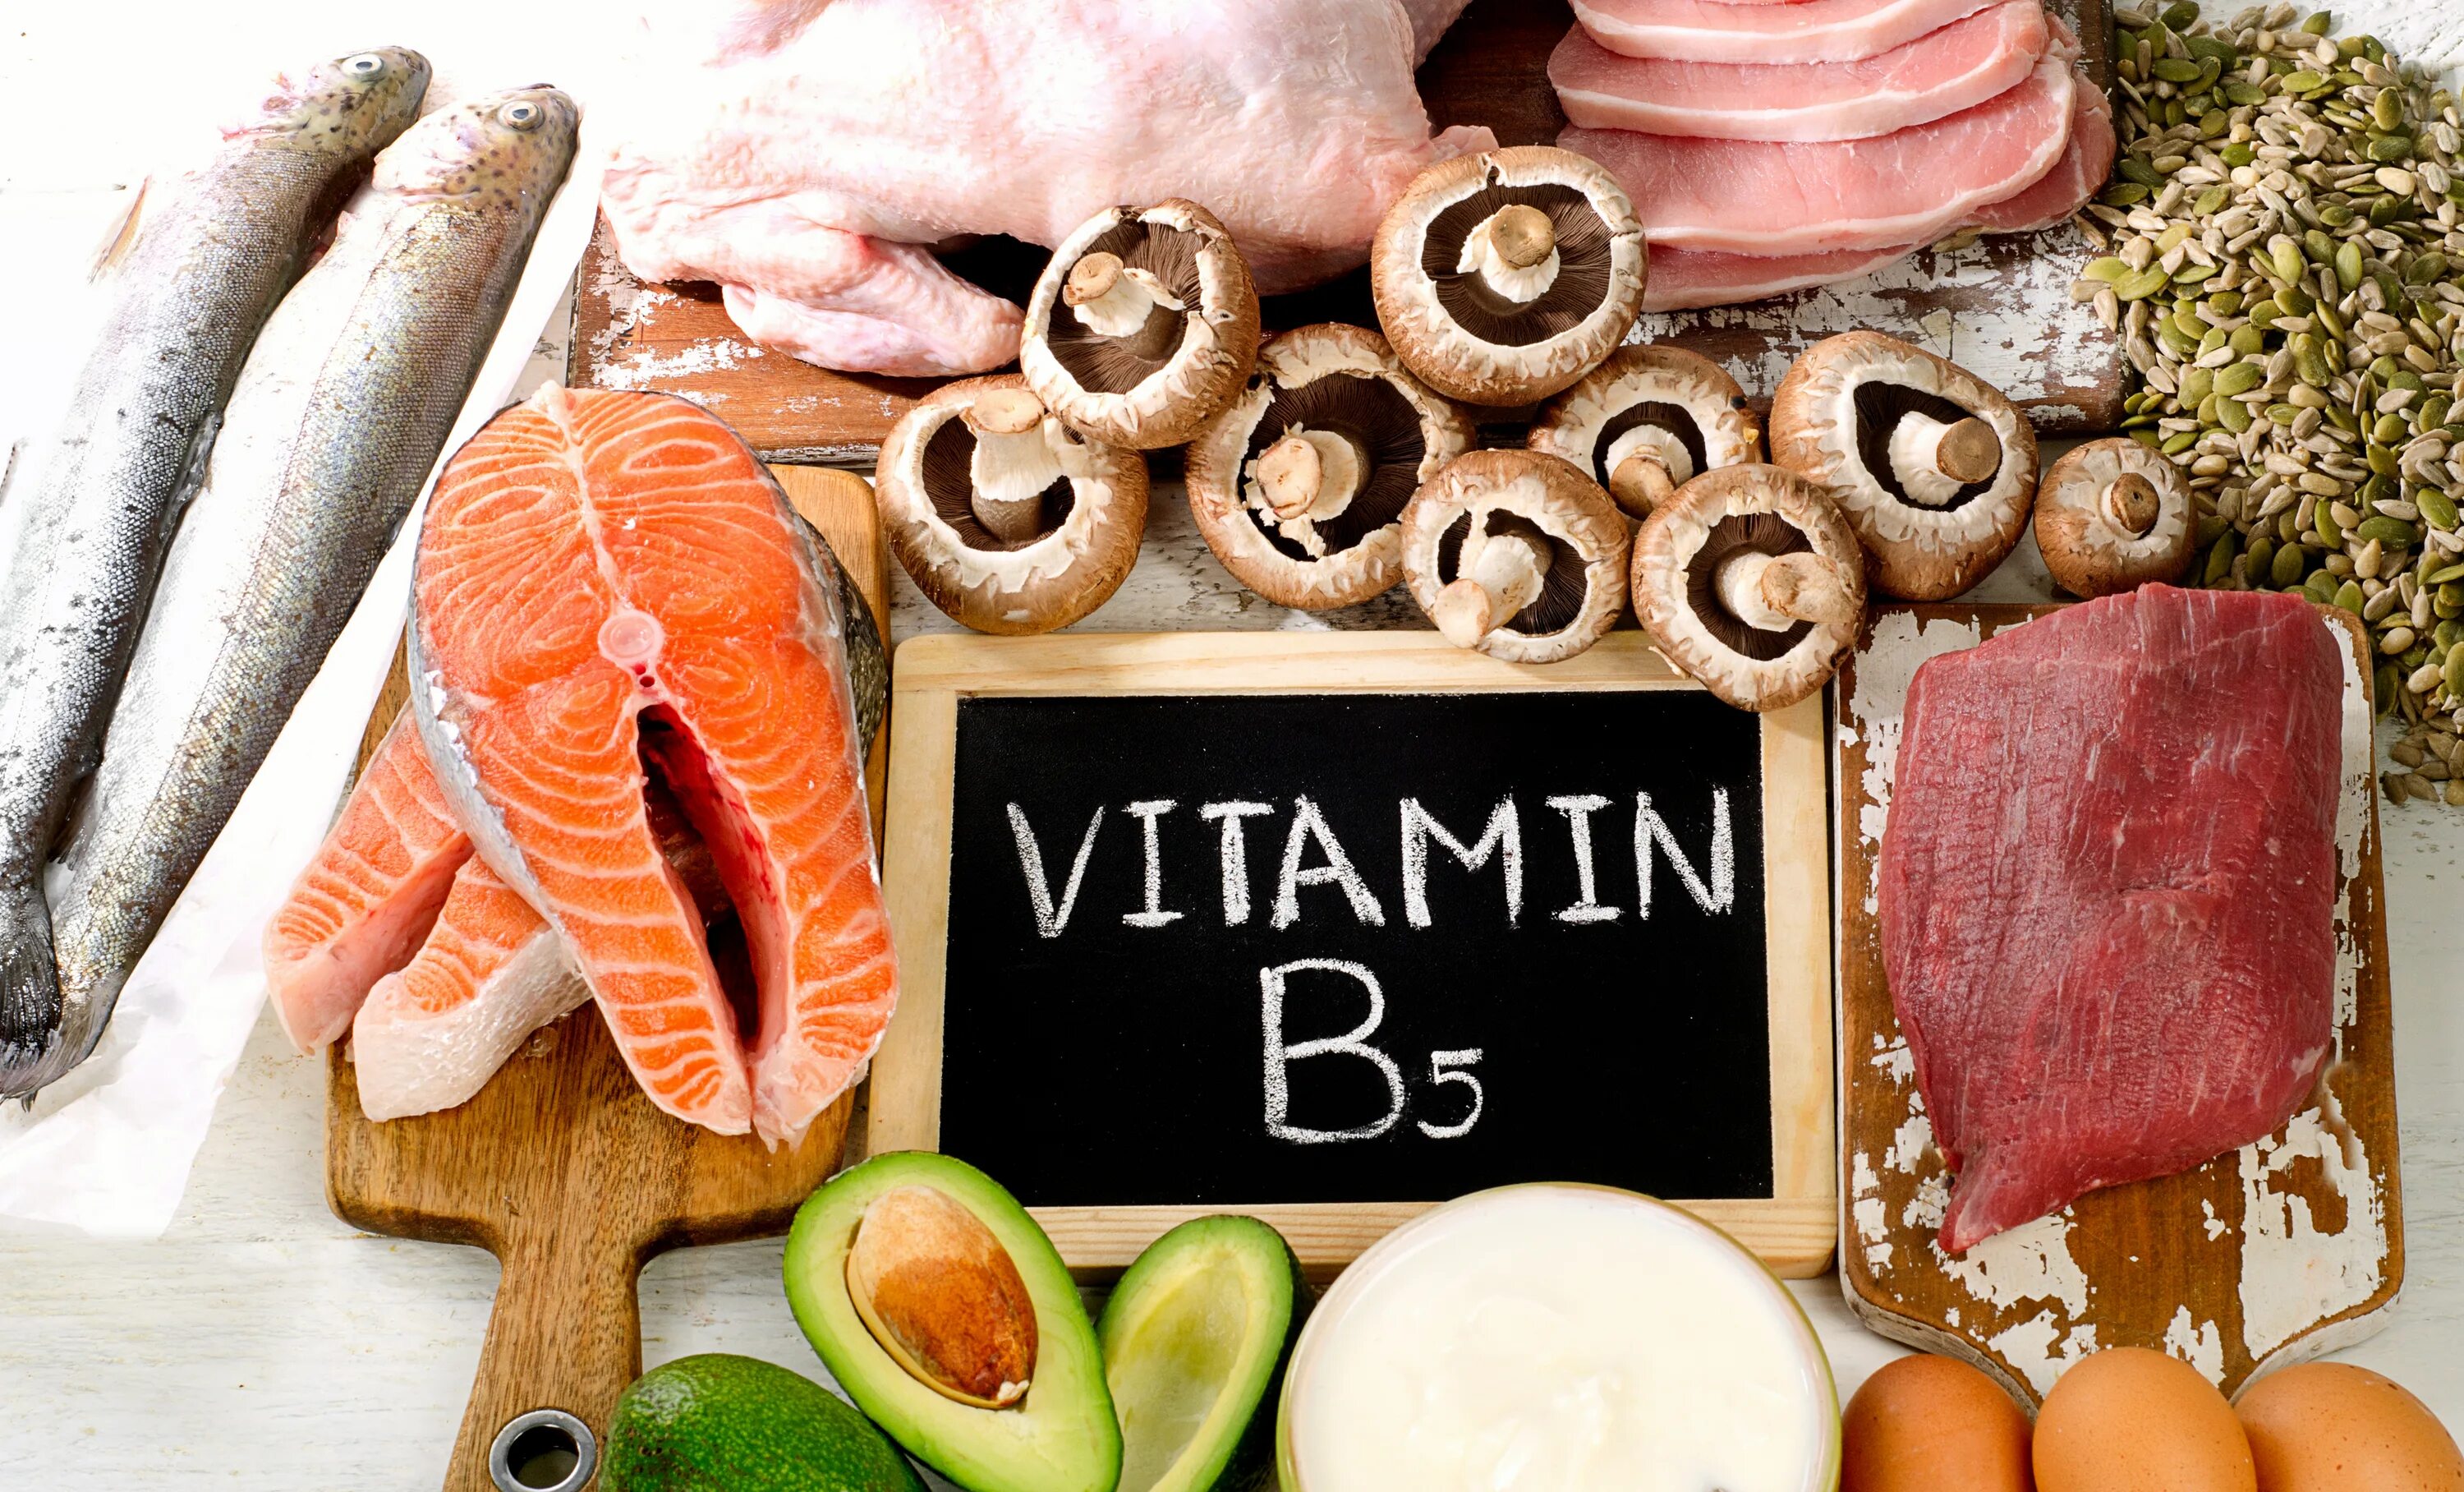 Источники группы б. Витамин b5 пантотеновая кислота. Витамины группы b5. Пантотеновая кислота (витамин b5) в продуктах. Источники витамина в5.